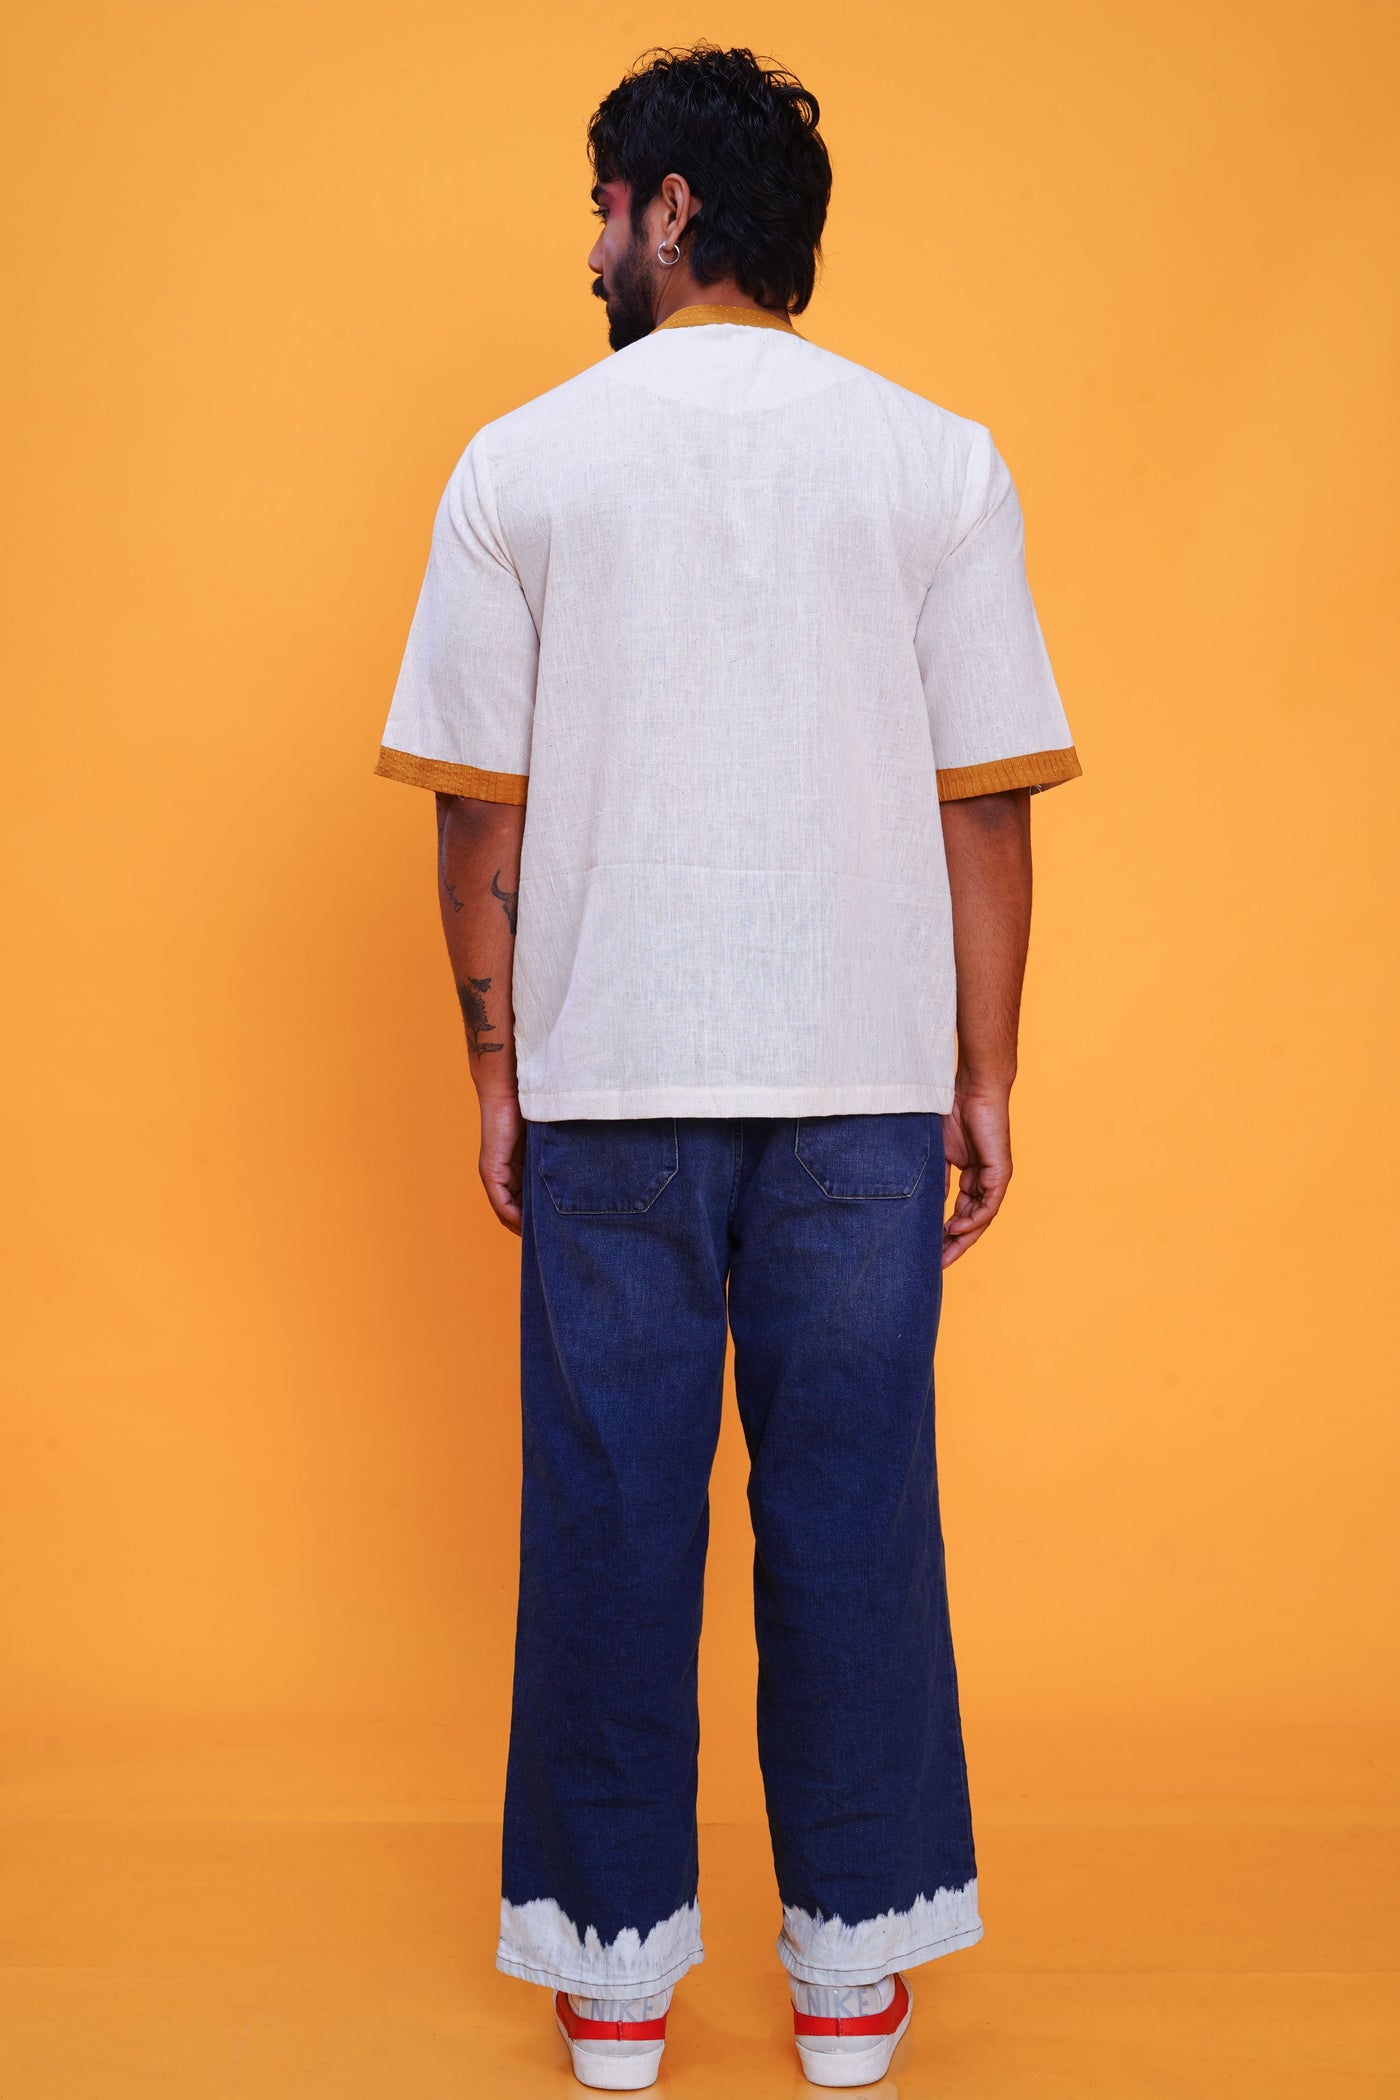 Kala cotton sunshine bunkar t-shirt for men